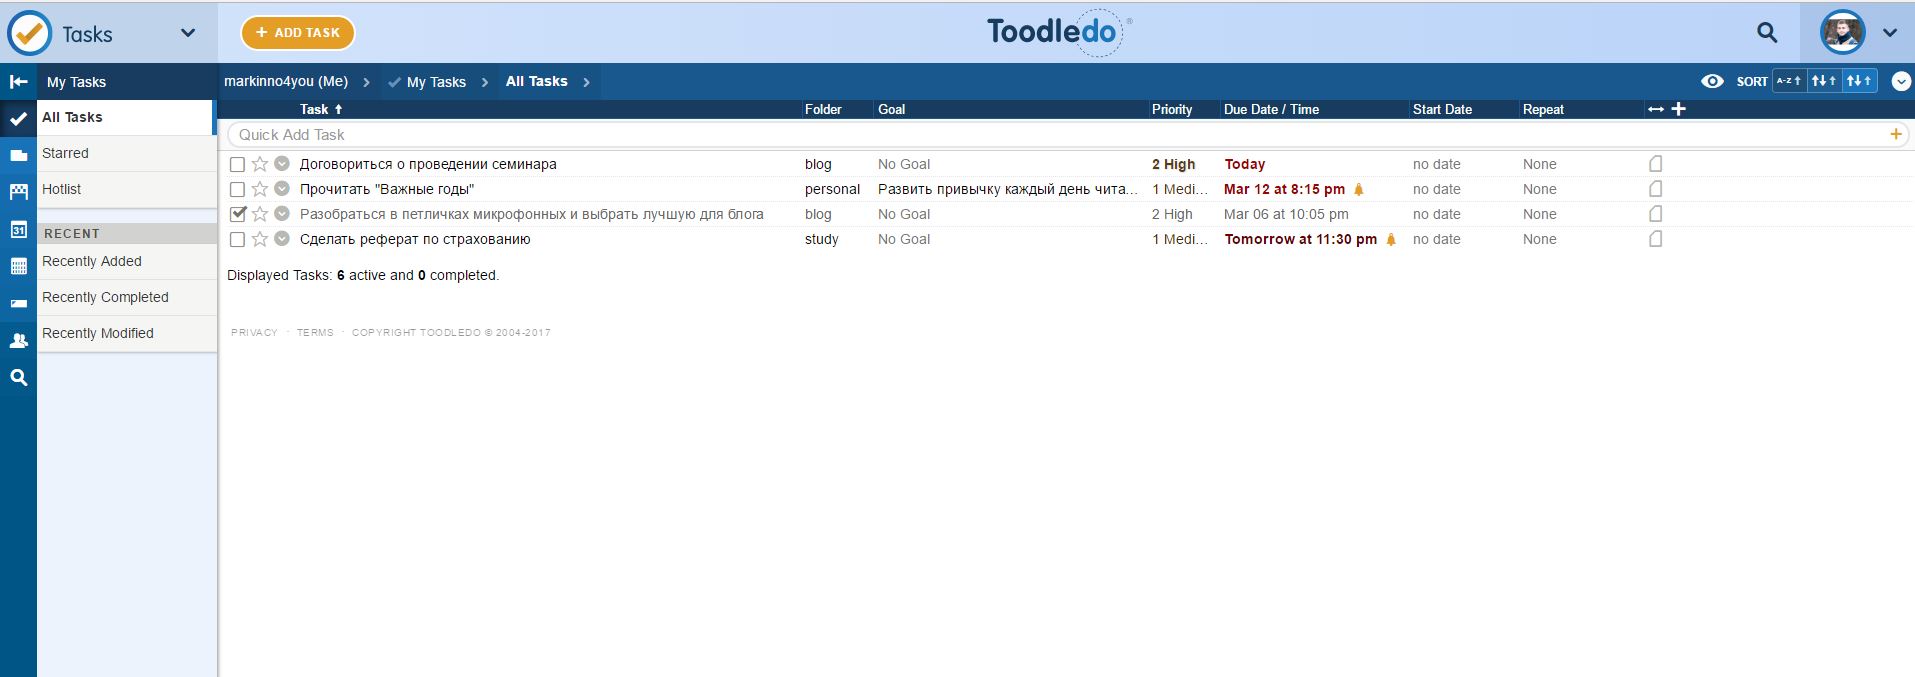 Обзор Toodledo - лучшего задачника по методу GTD